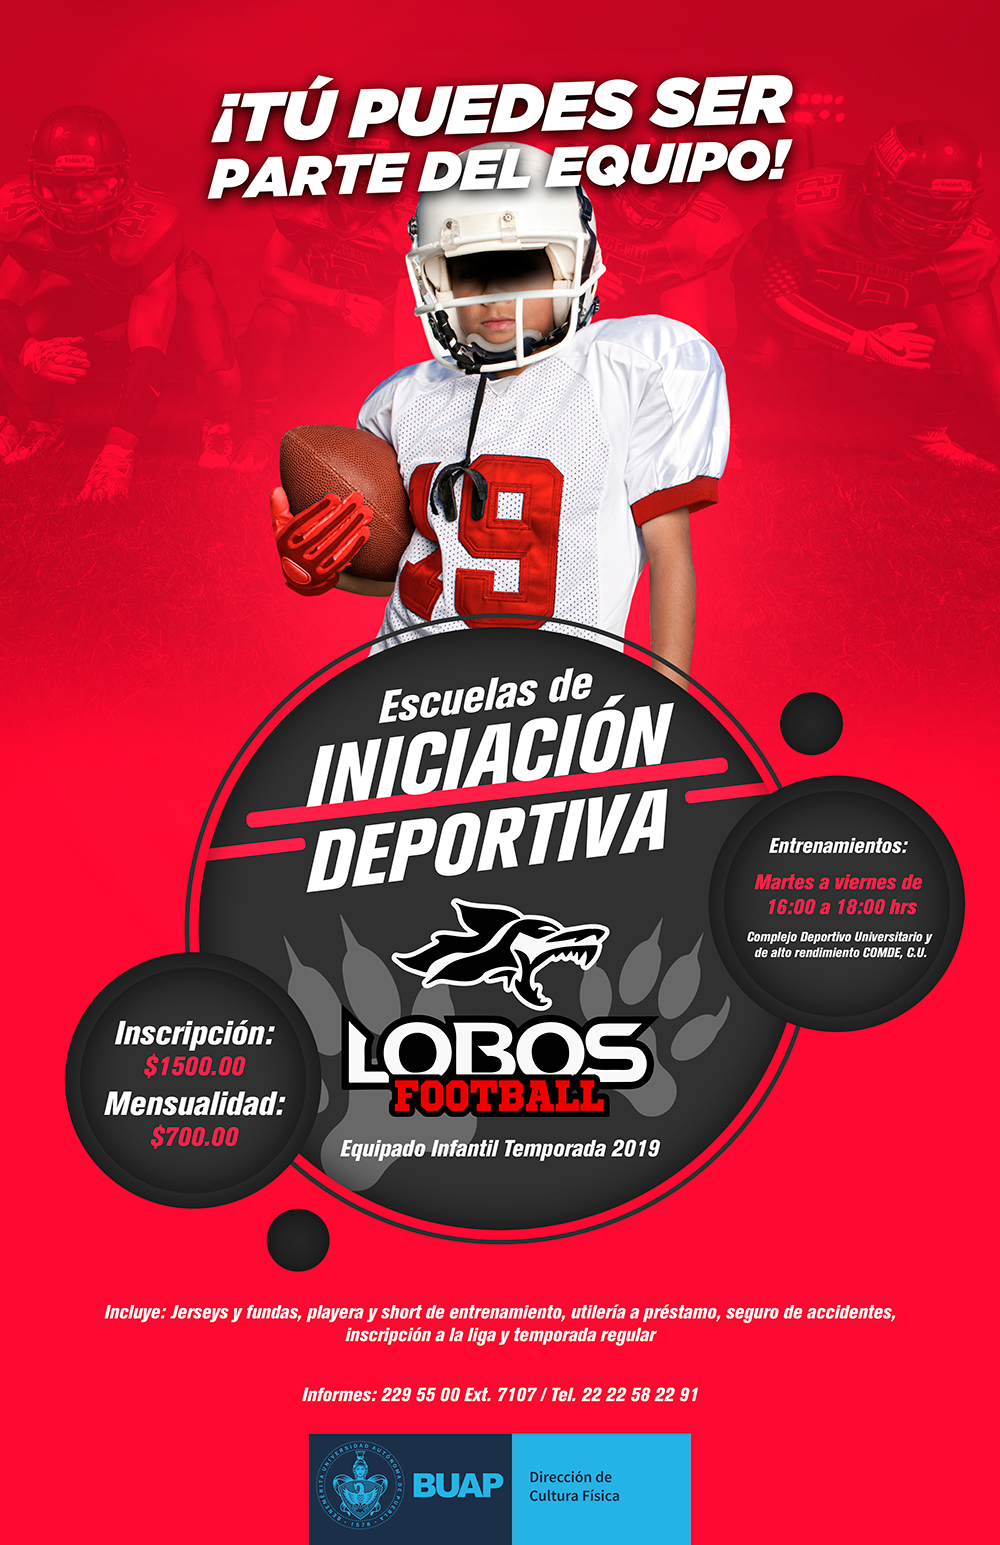 Escuelas de Iniciación Deportiva Lobos Football | Benemérita Universidad  Autónoma de Puebla